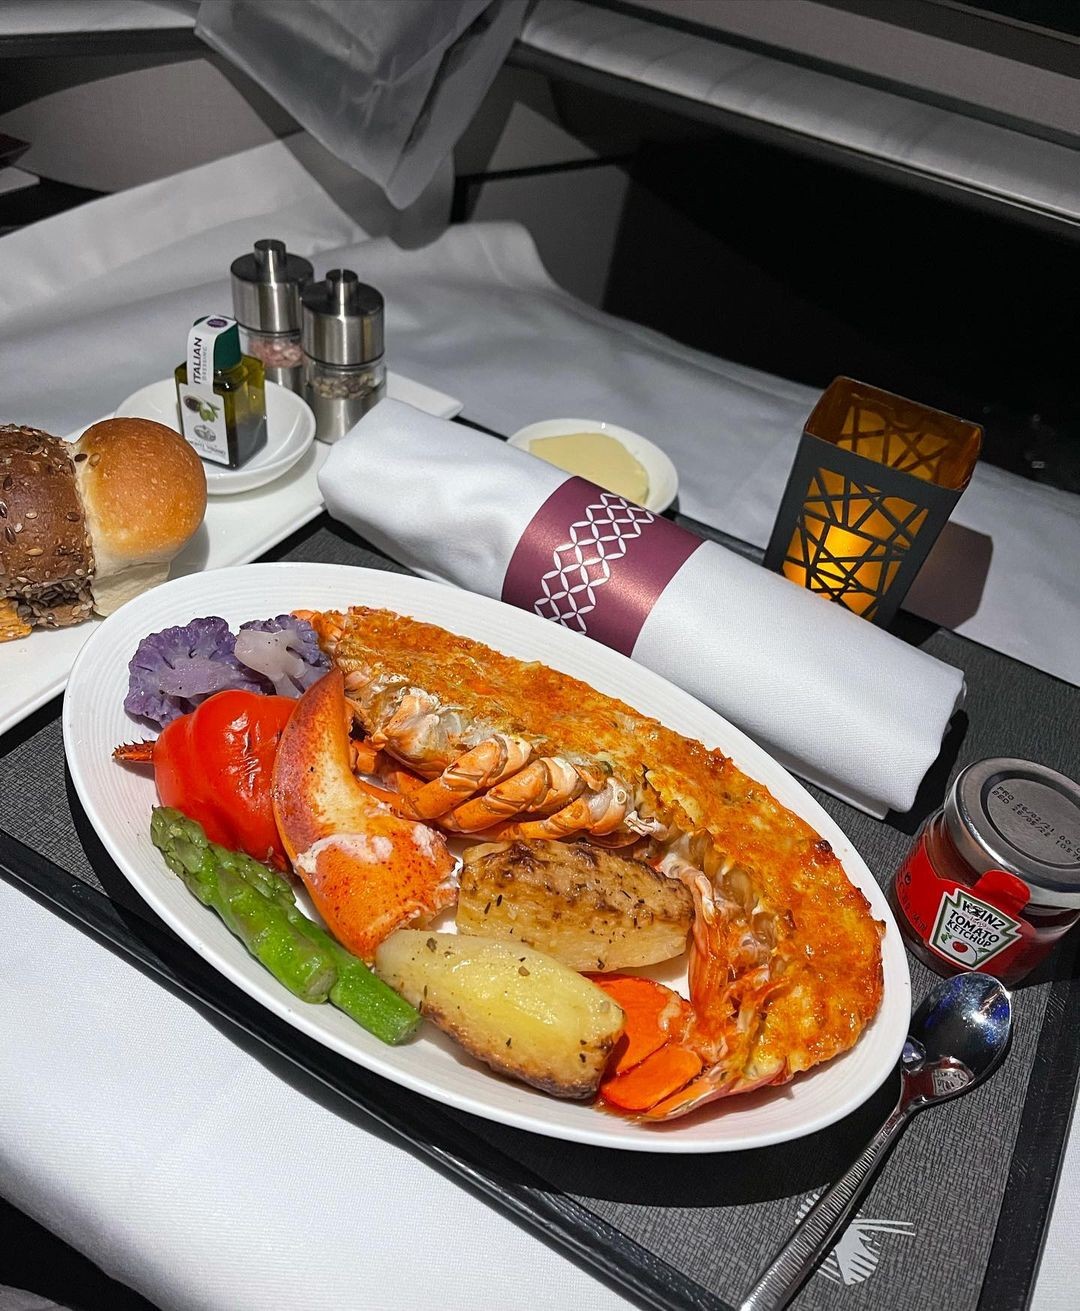 O serviço de bordo da Qatar Airlines serve lagosta na primeira classe do voo (Foto: Reprodução/Instagram)